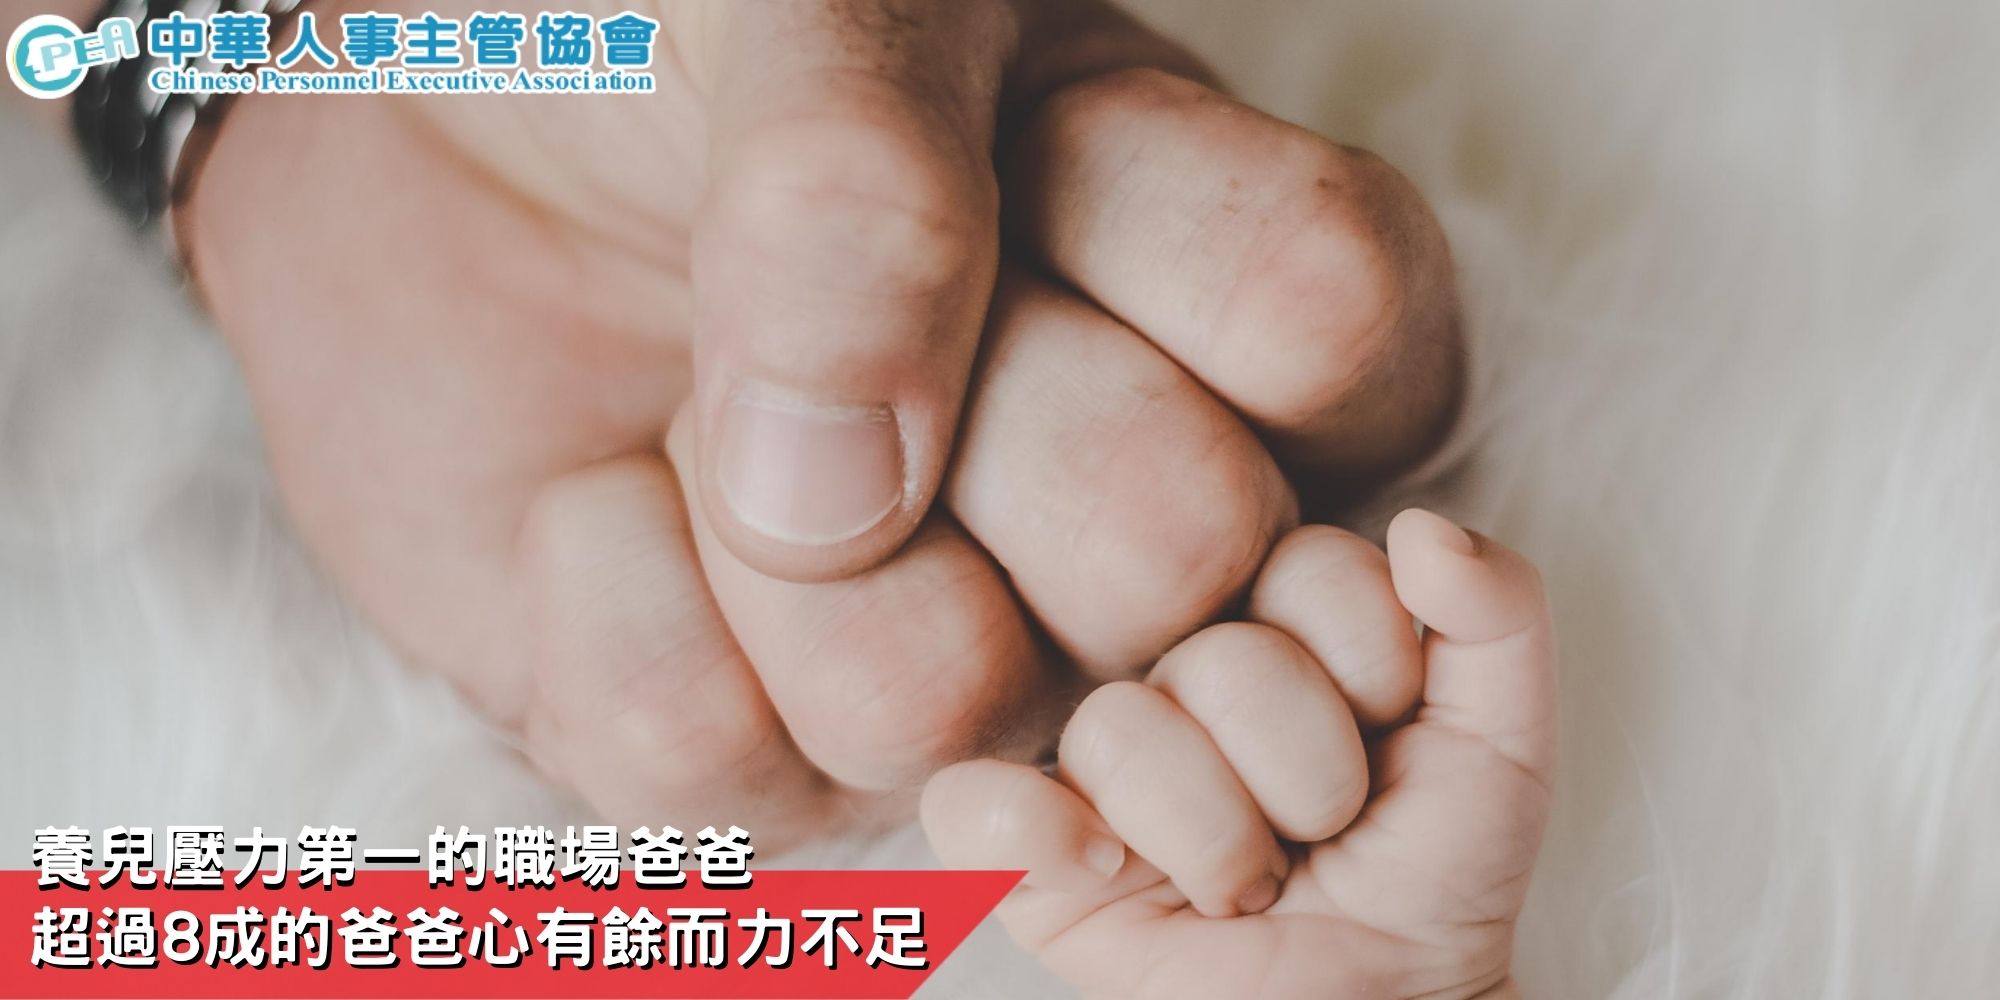 養兒壓力第一的職場爸爸 超過8成的爸爸心有餘而力不足│中華人事主管協會-HR